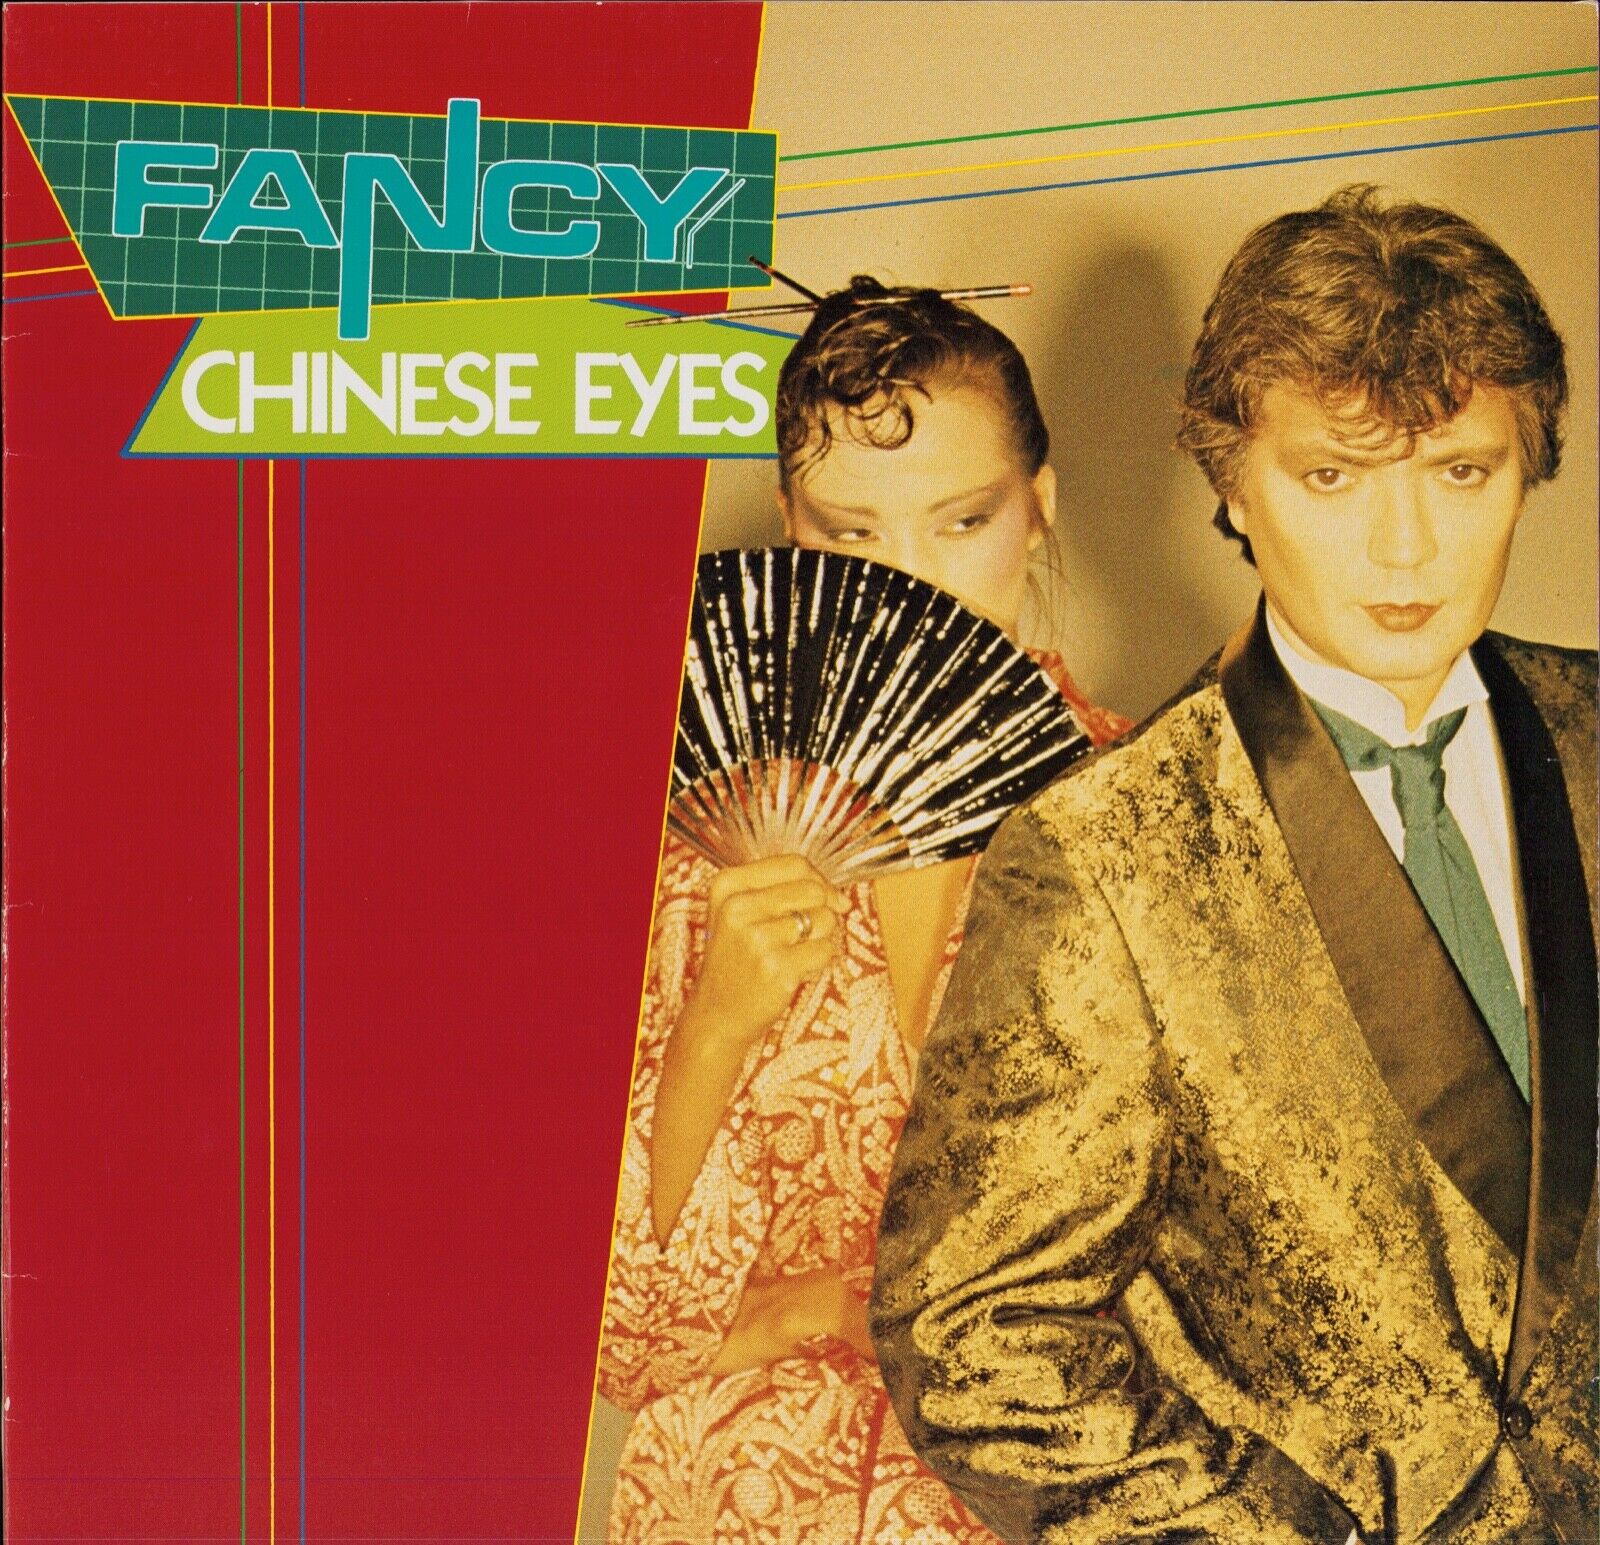 Fancy ‎- Chinese Eyes Vinyl 12"